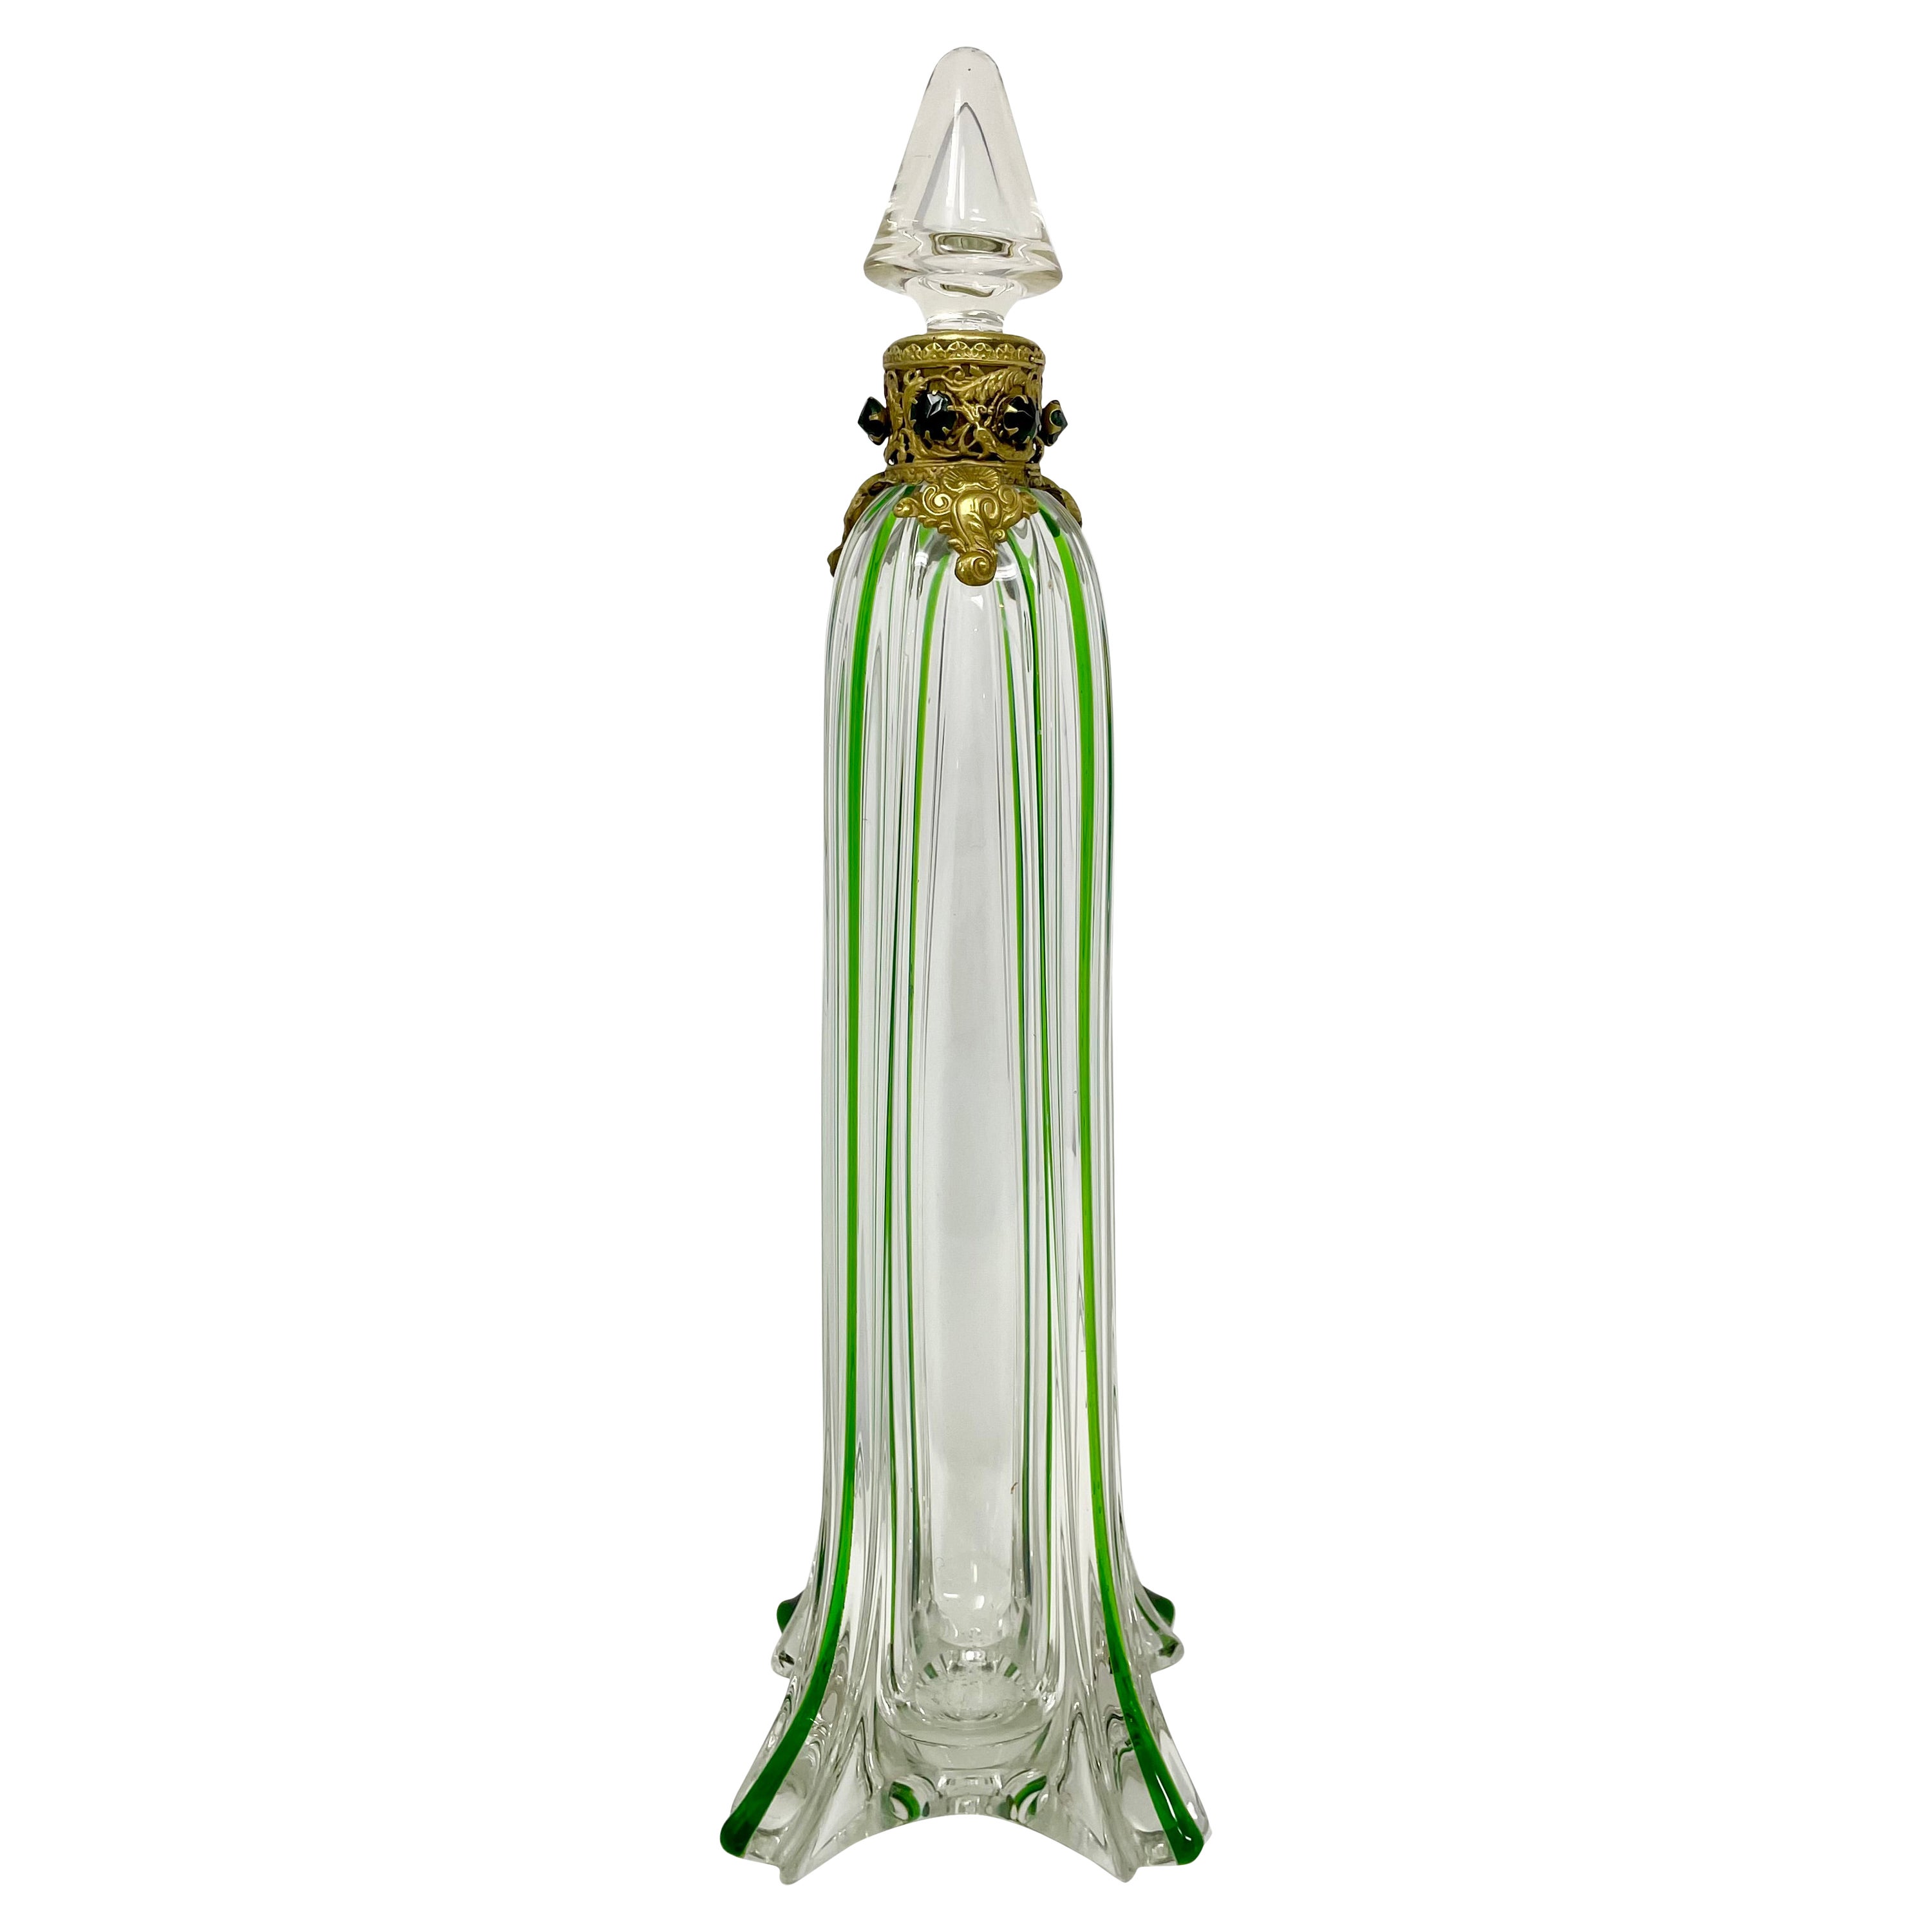 Flacon de parfum ancien en bronze doré et verre soufflé à la main vert et transparent, vers 1900